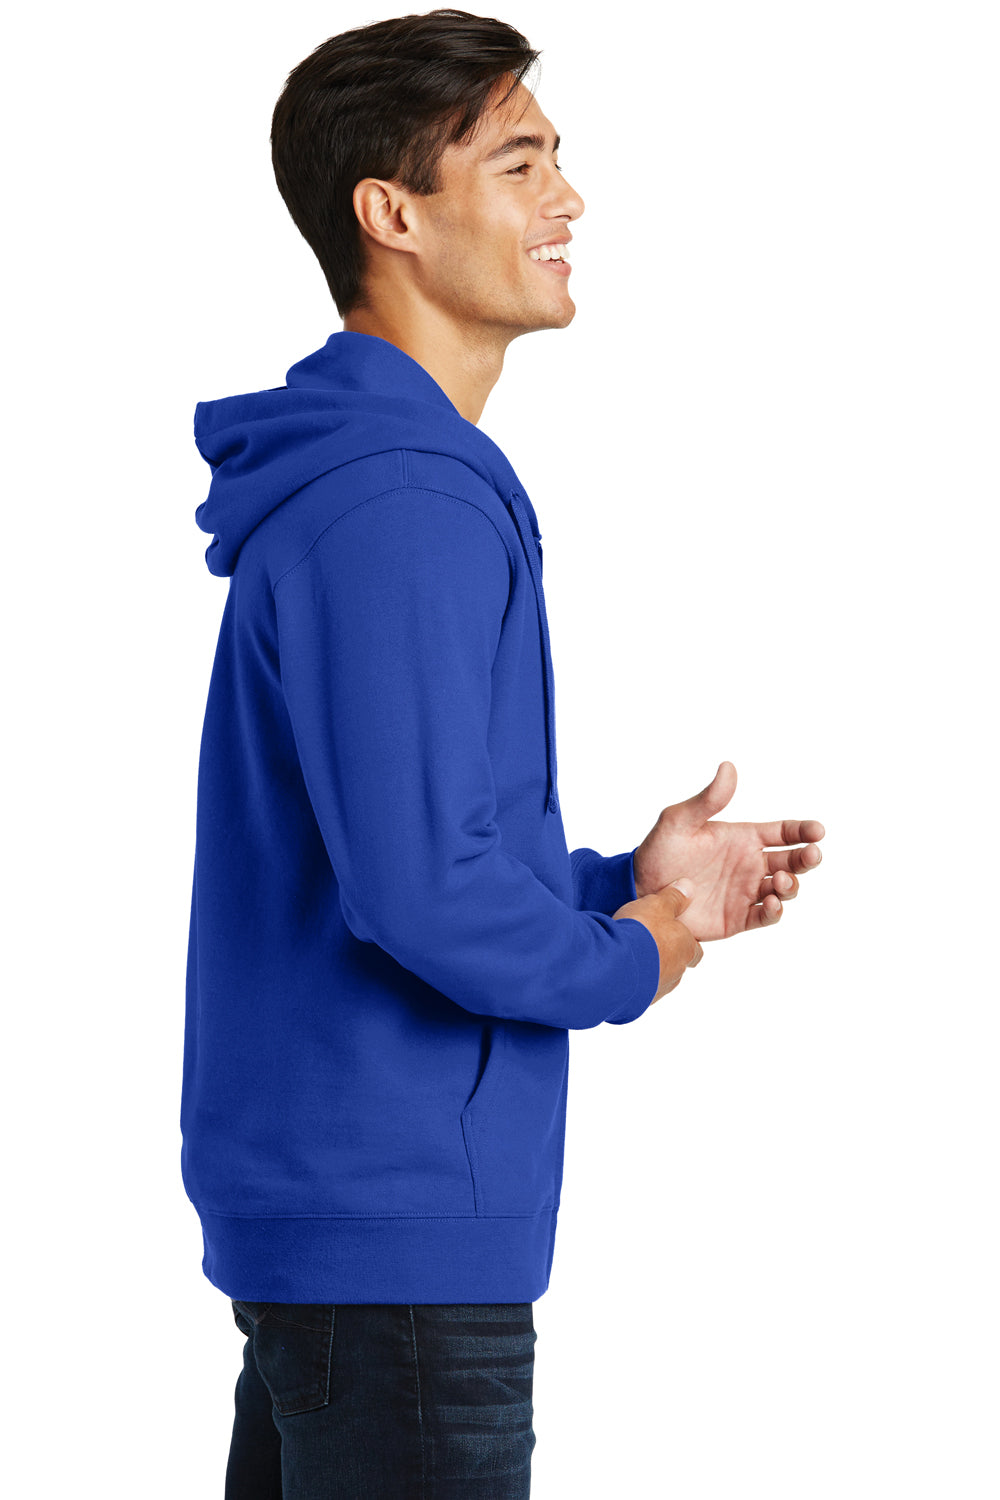 Port & Company PC850ZH Mens Fan Favorite Fleece Full Zip Hooded Sweatshirt Hoodie Royal Blue Side